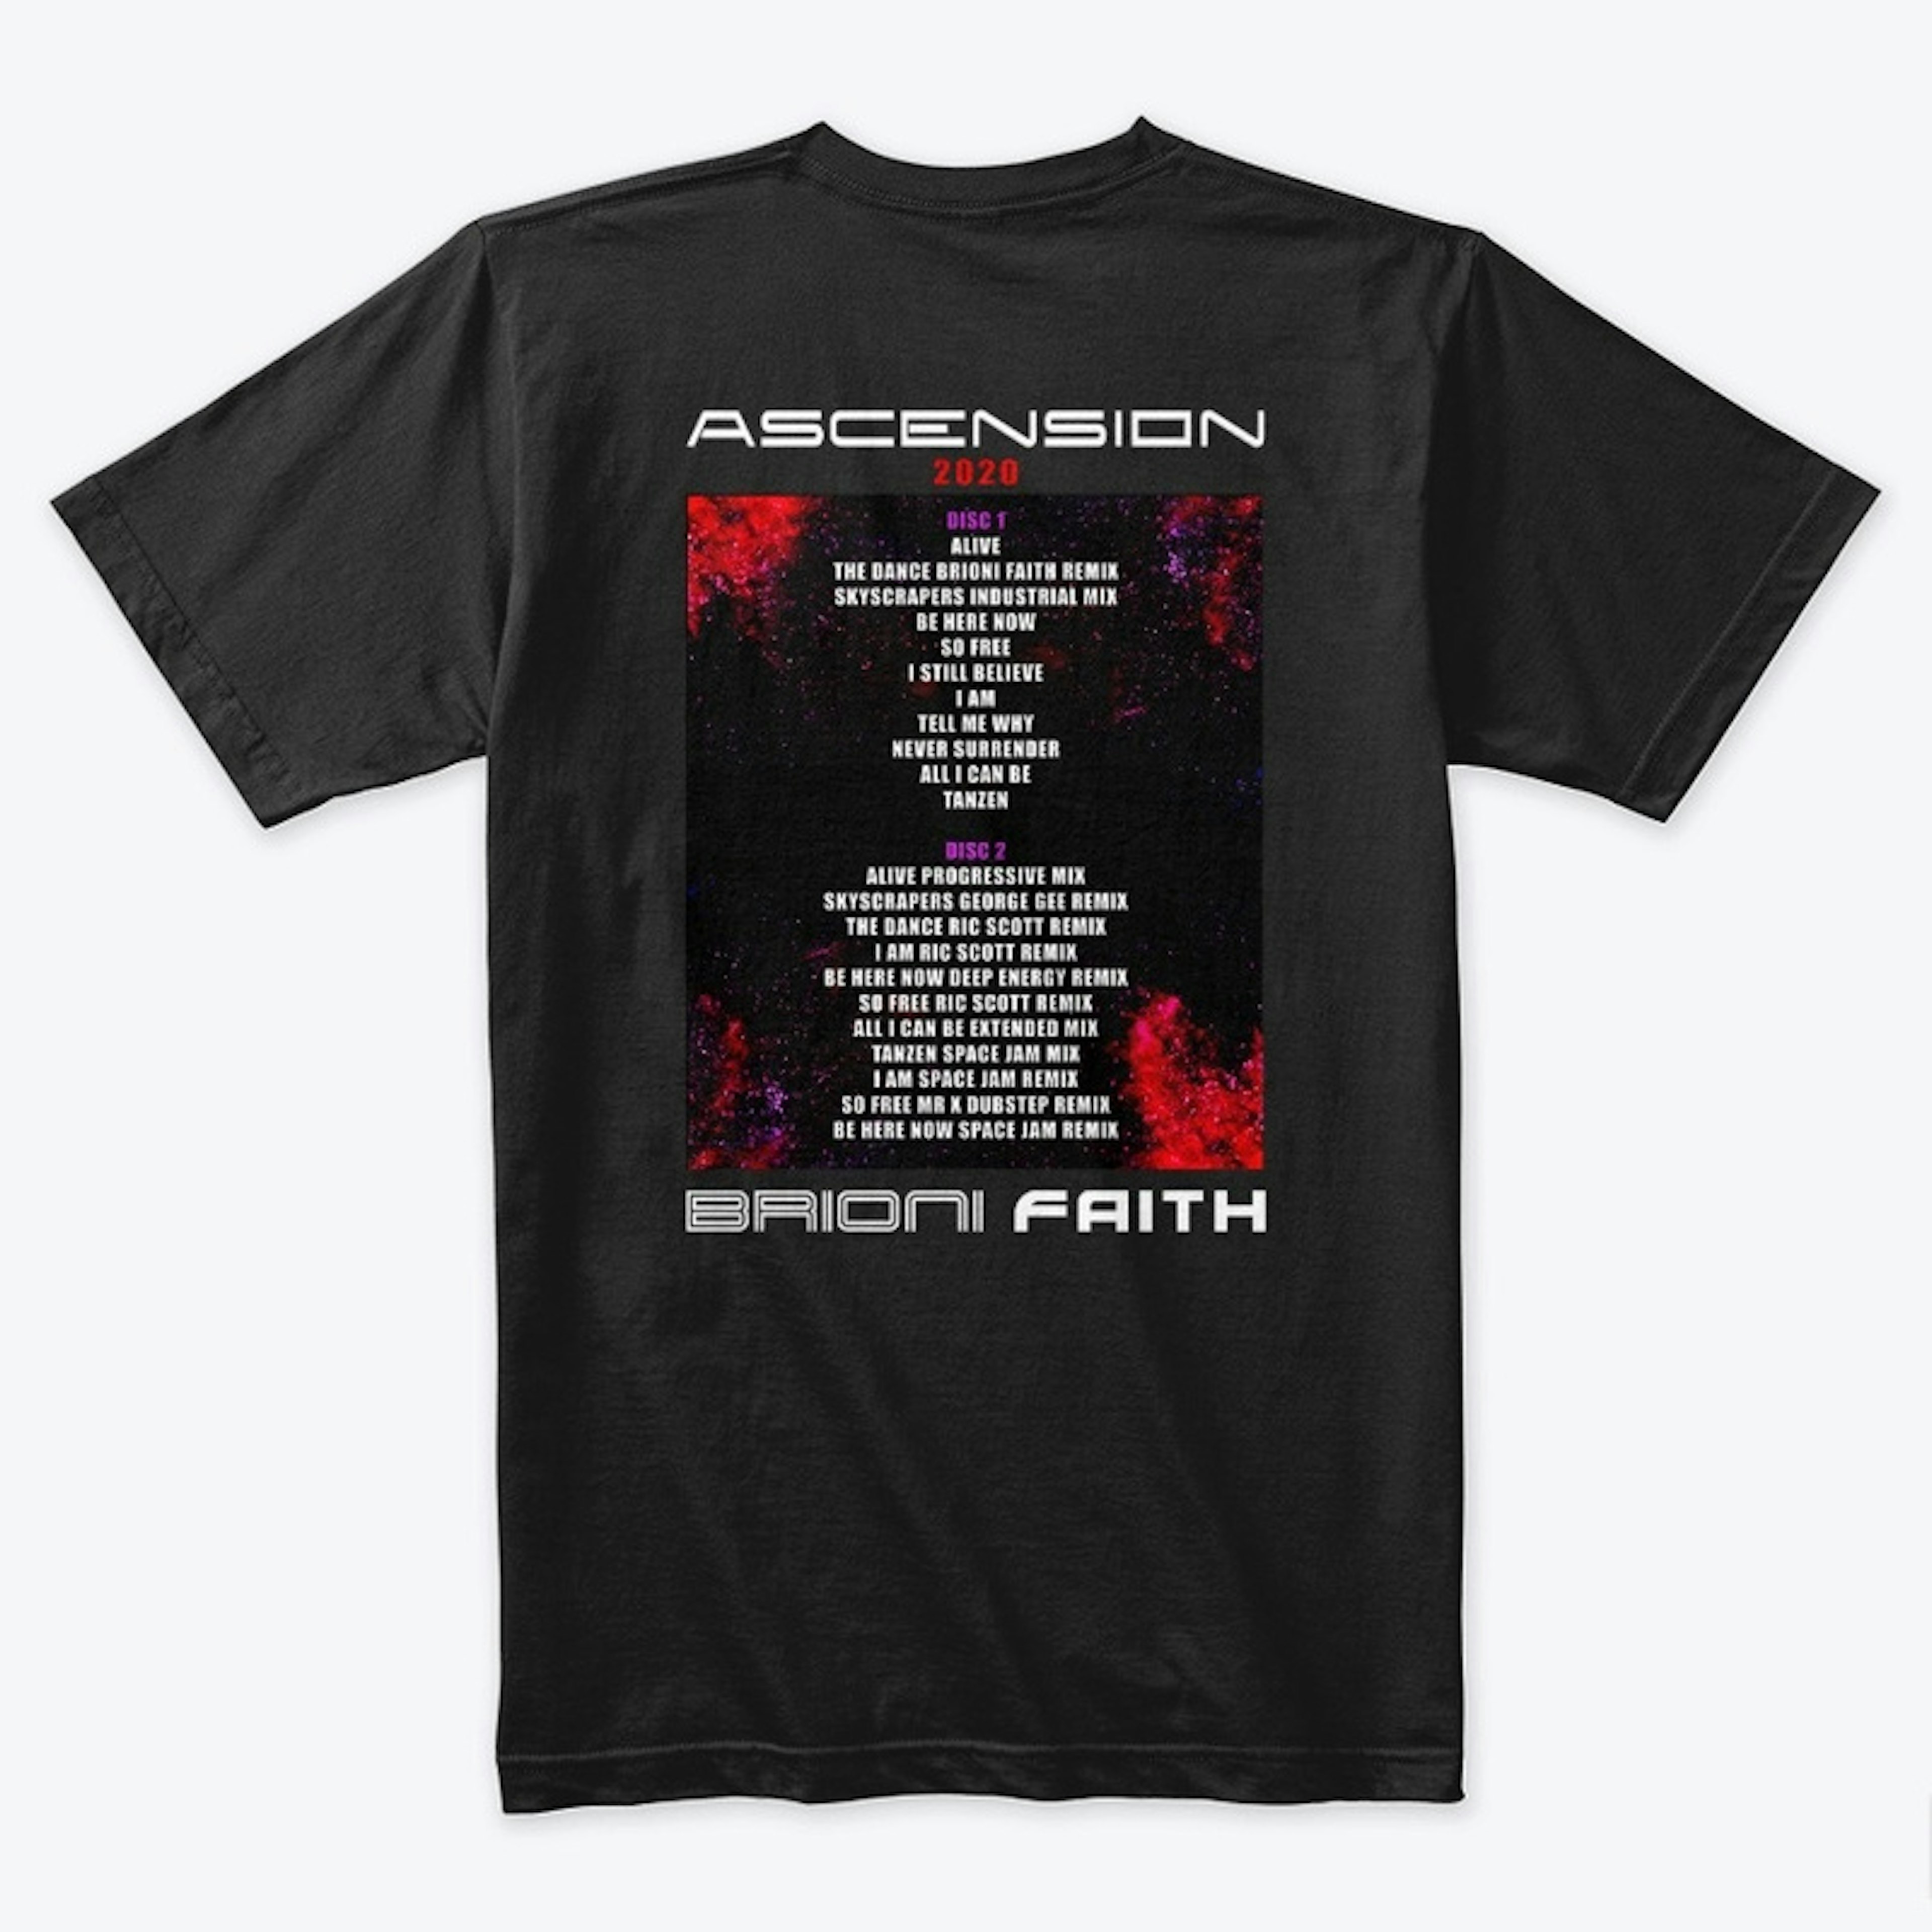 Ascension Album Tee!